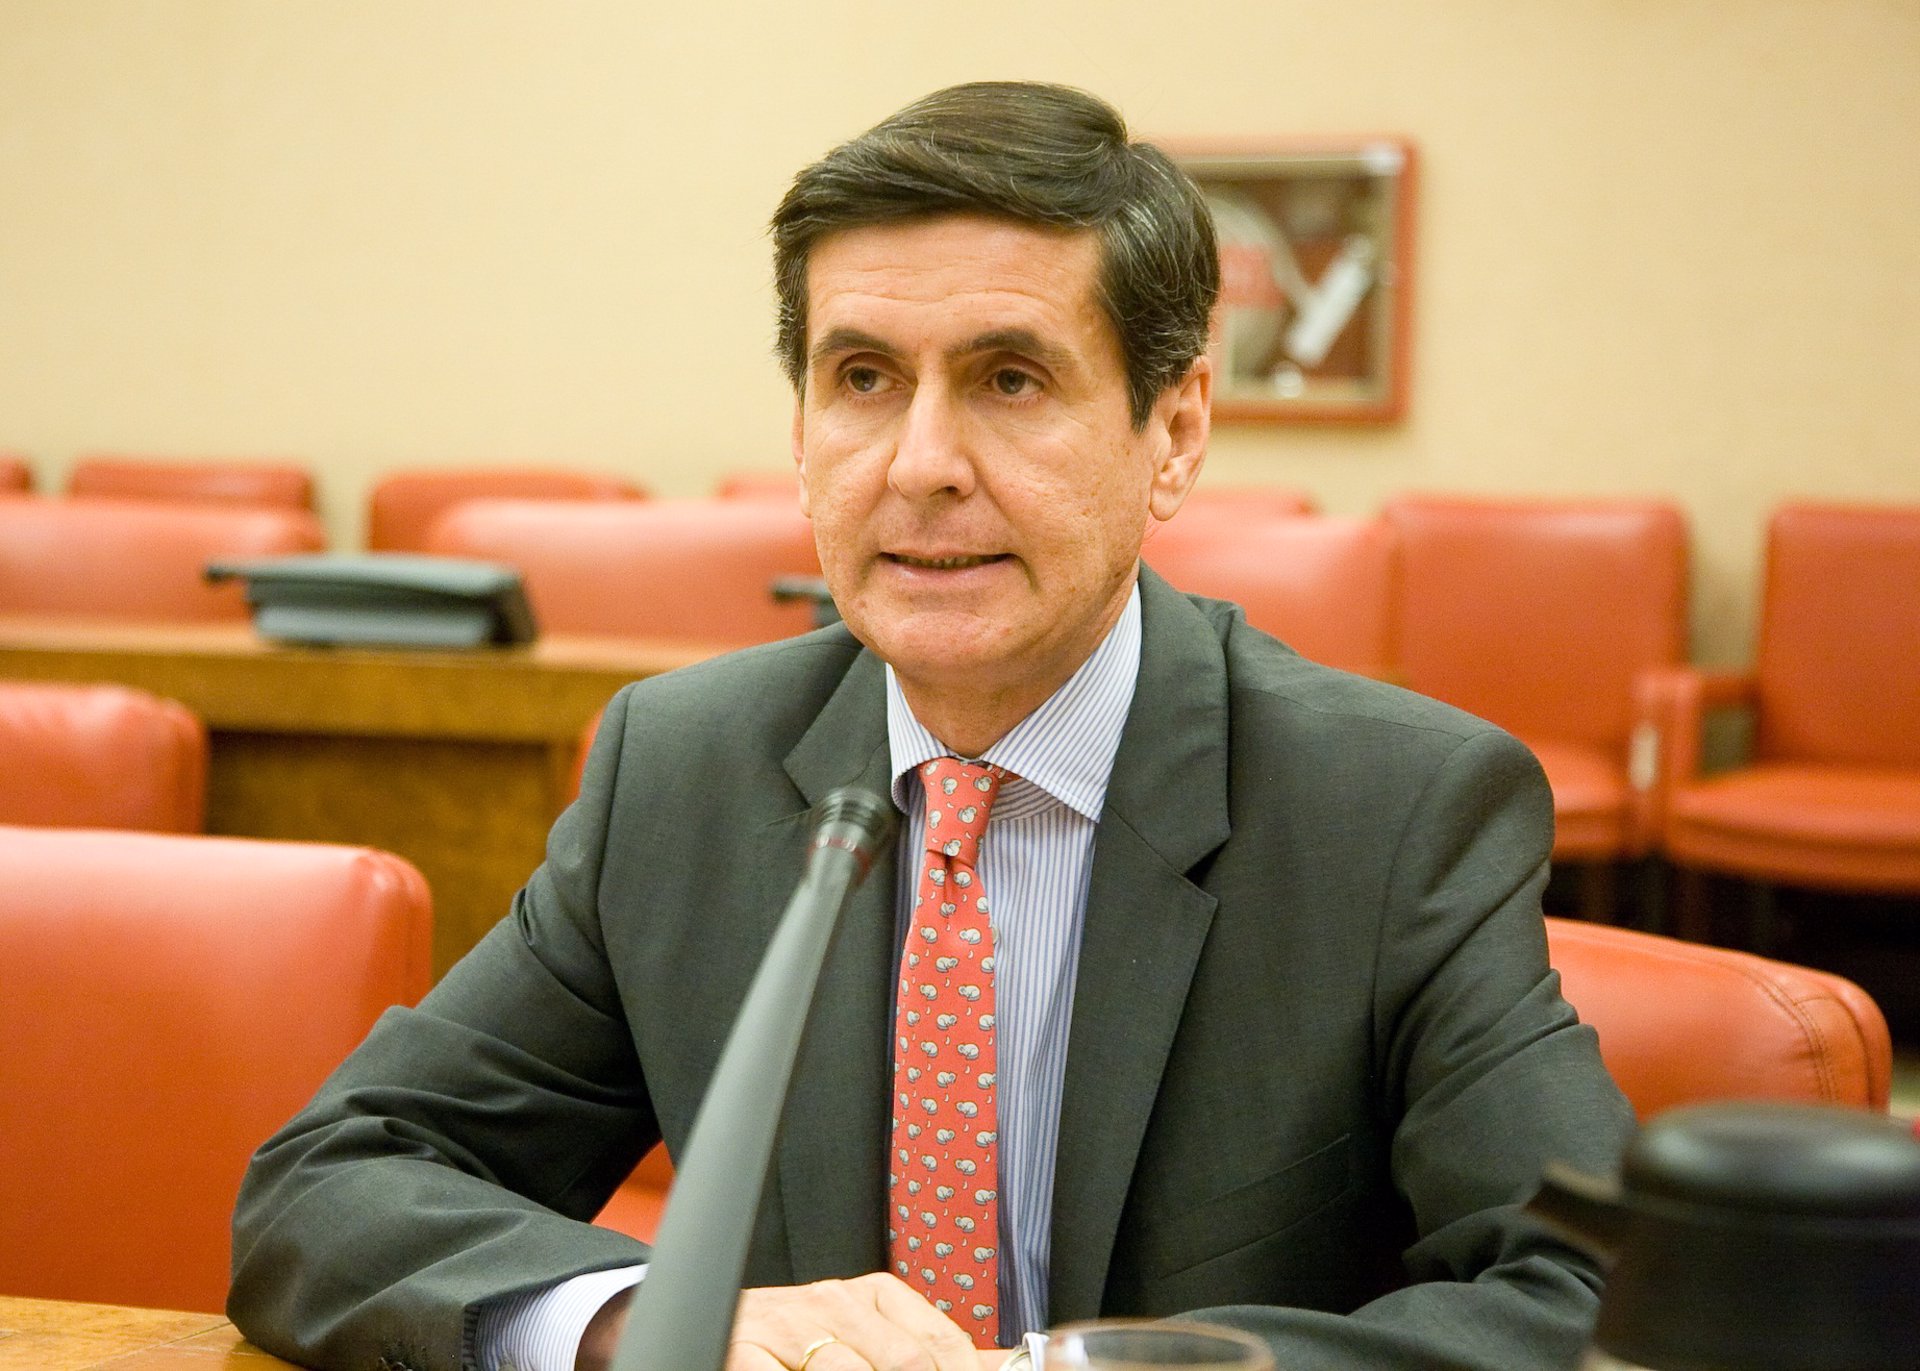 González Trevijano, elegido por unanimidad presidente del Constitucional